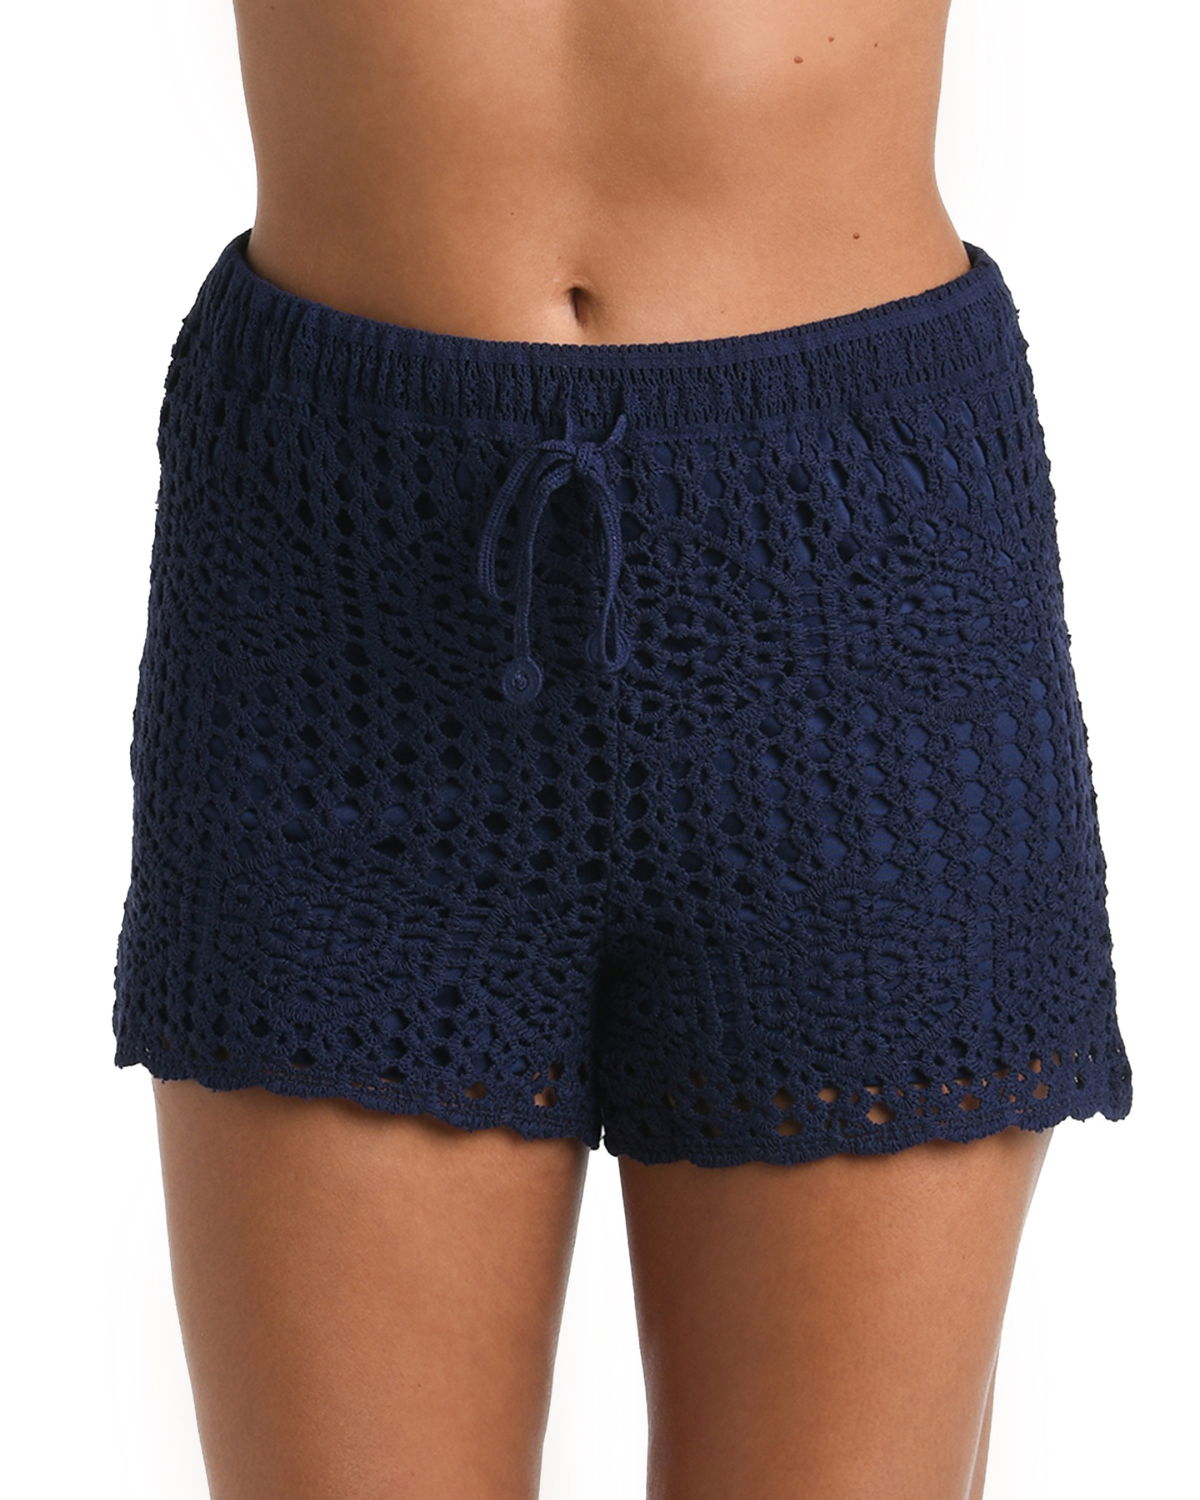 Model wearing a crochet short in indigo